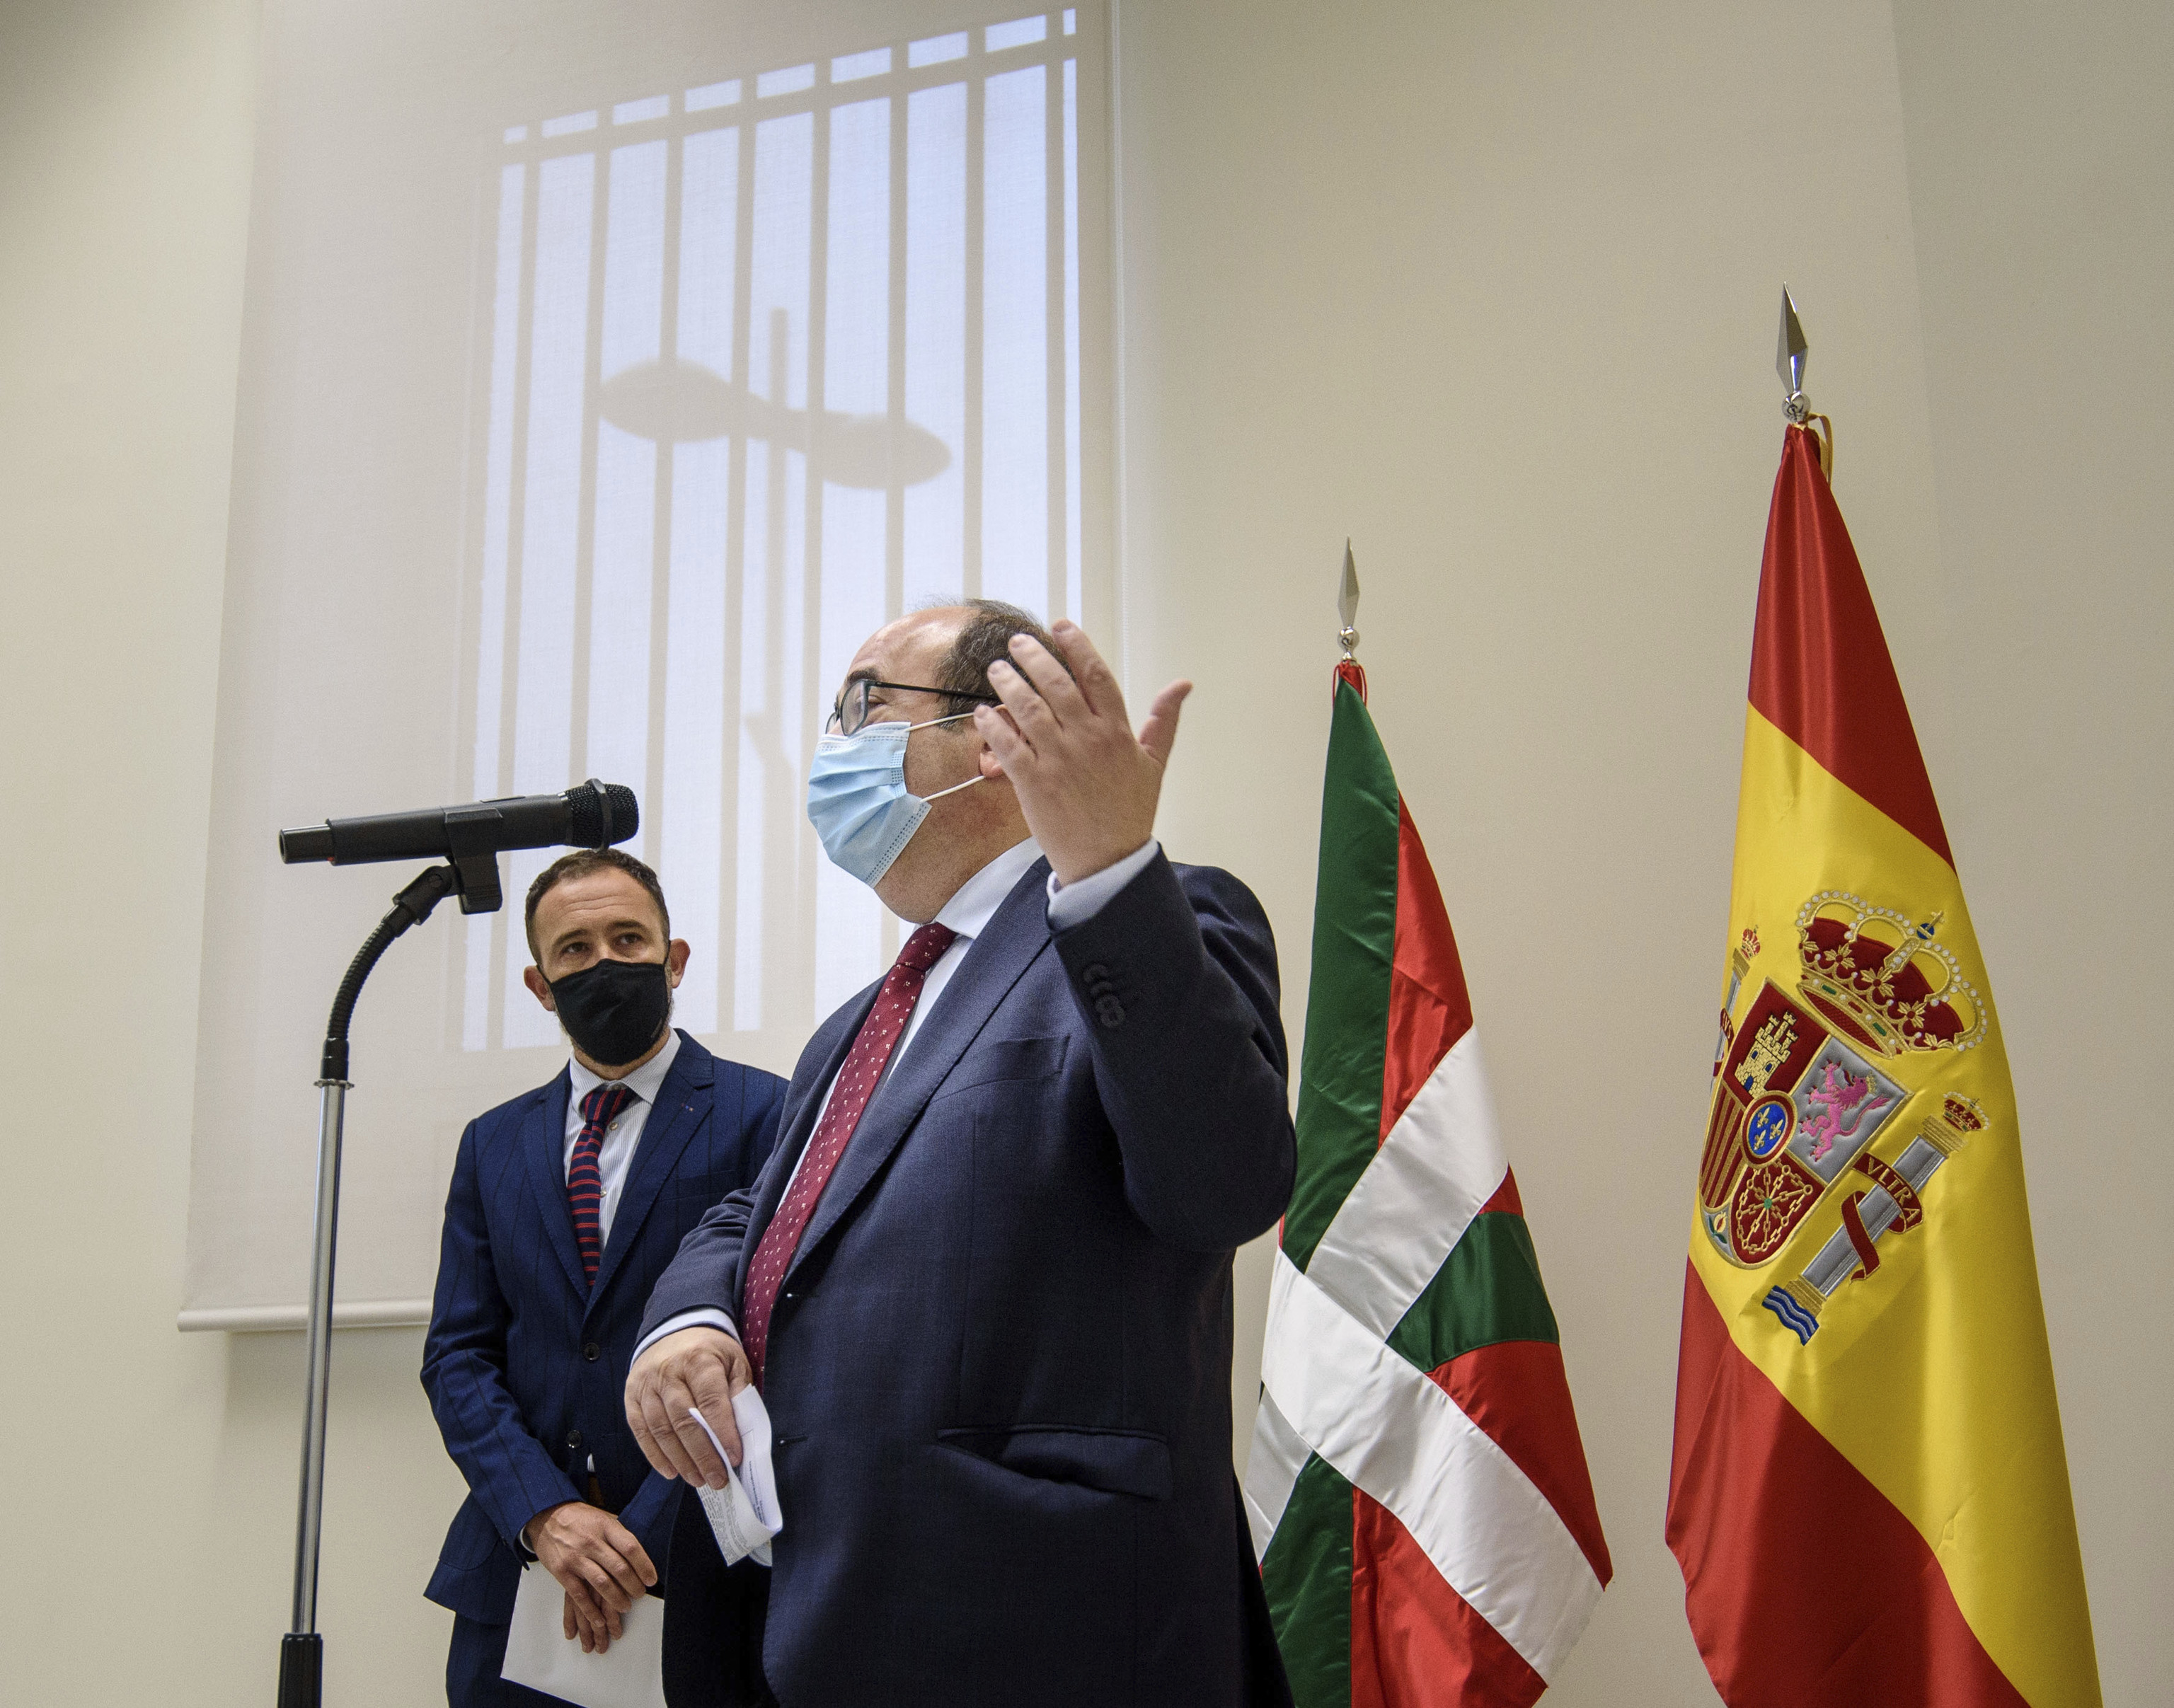 El ministro de Poltica Territorial y Funcin Pblica, Miquel Iceta, preside el acto de inauguracin oficial del Edificio de la Antigua Aduana de Bilbao, que alberga distintos servicios de la Administracin General del Estado en el territorio.